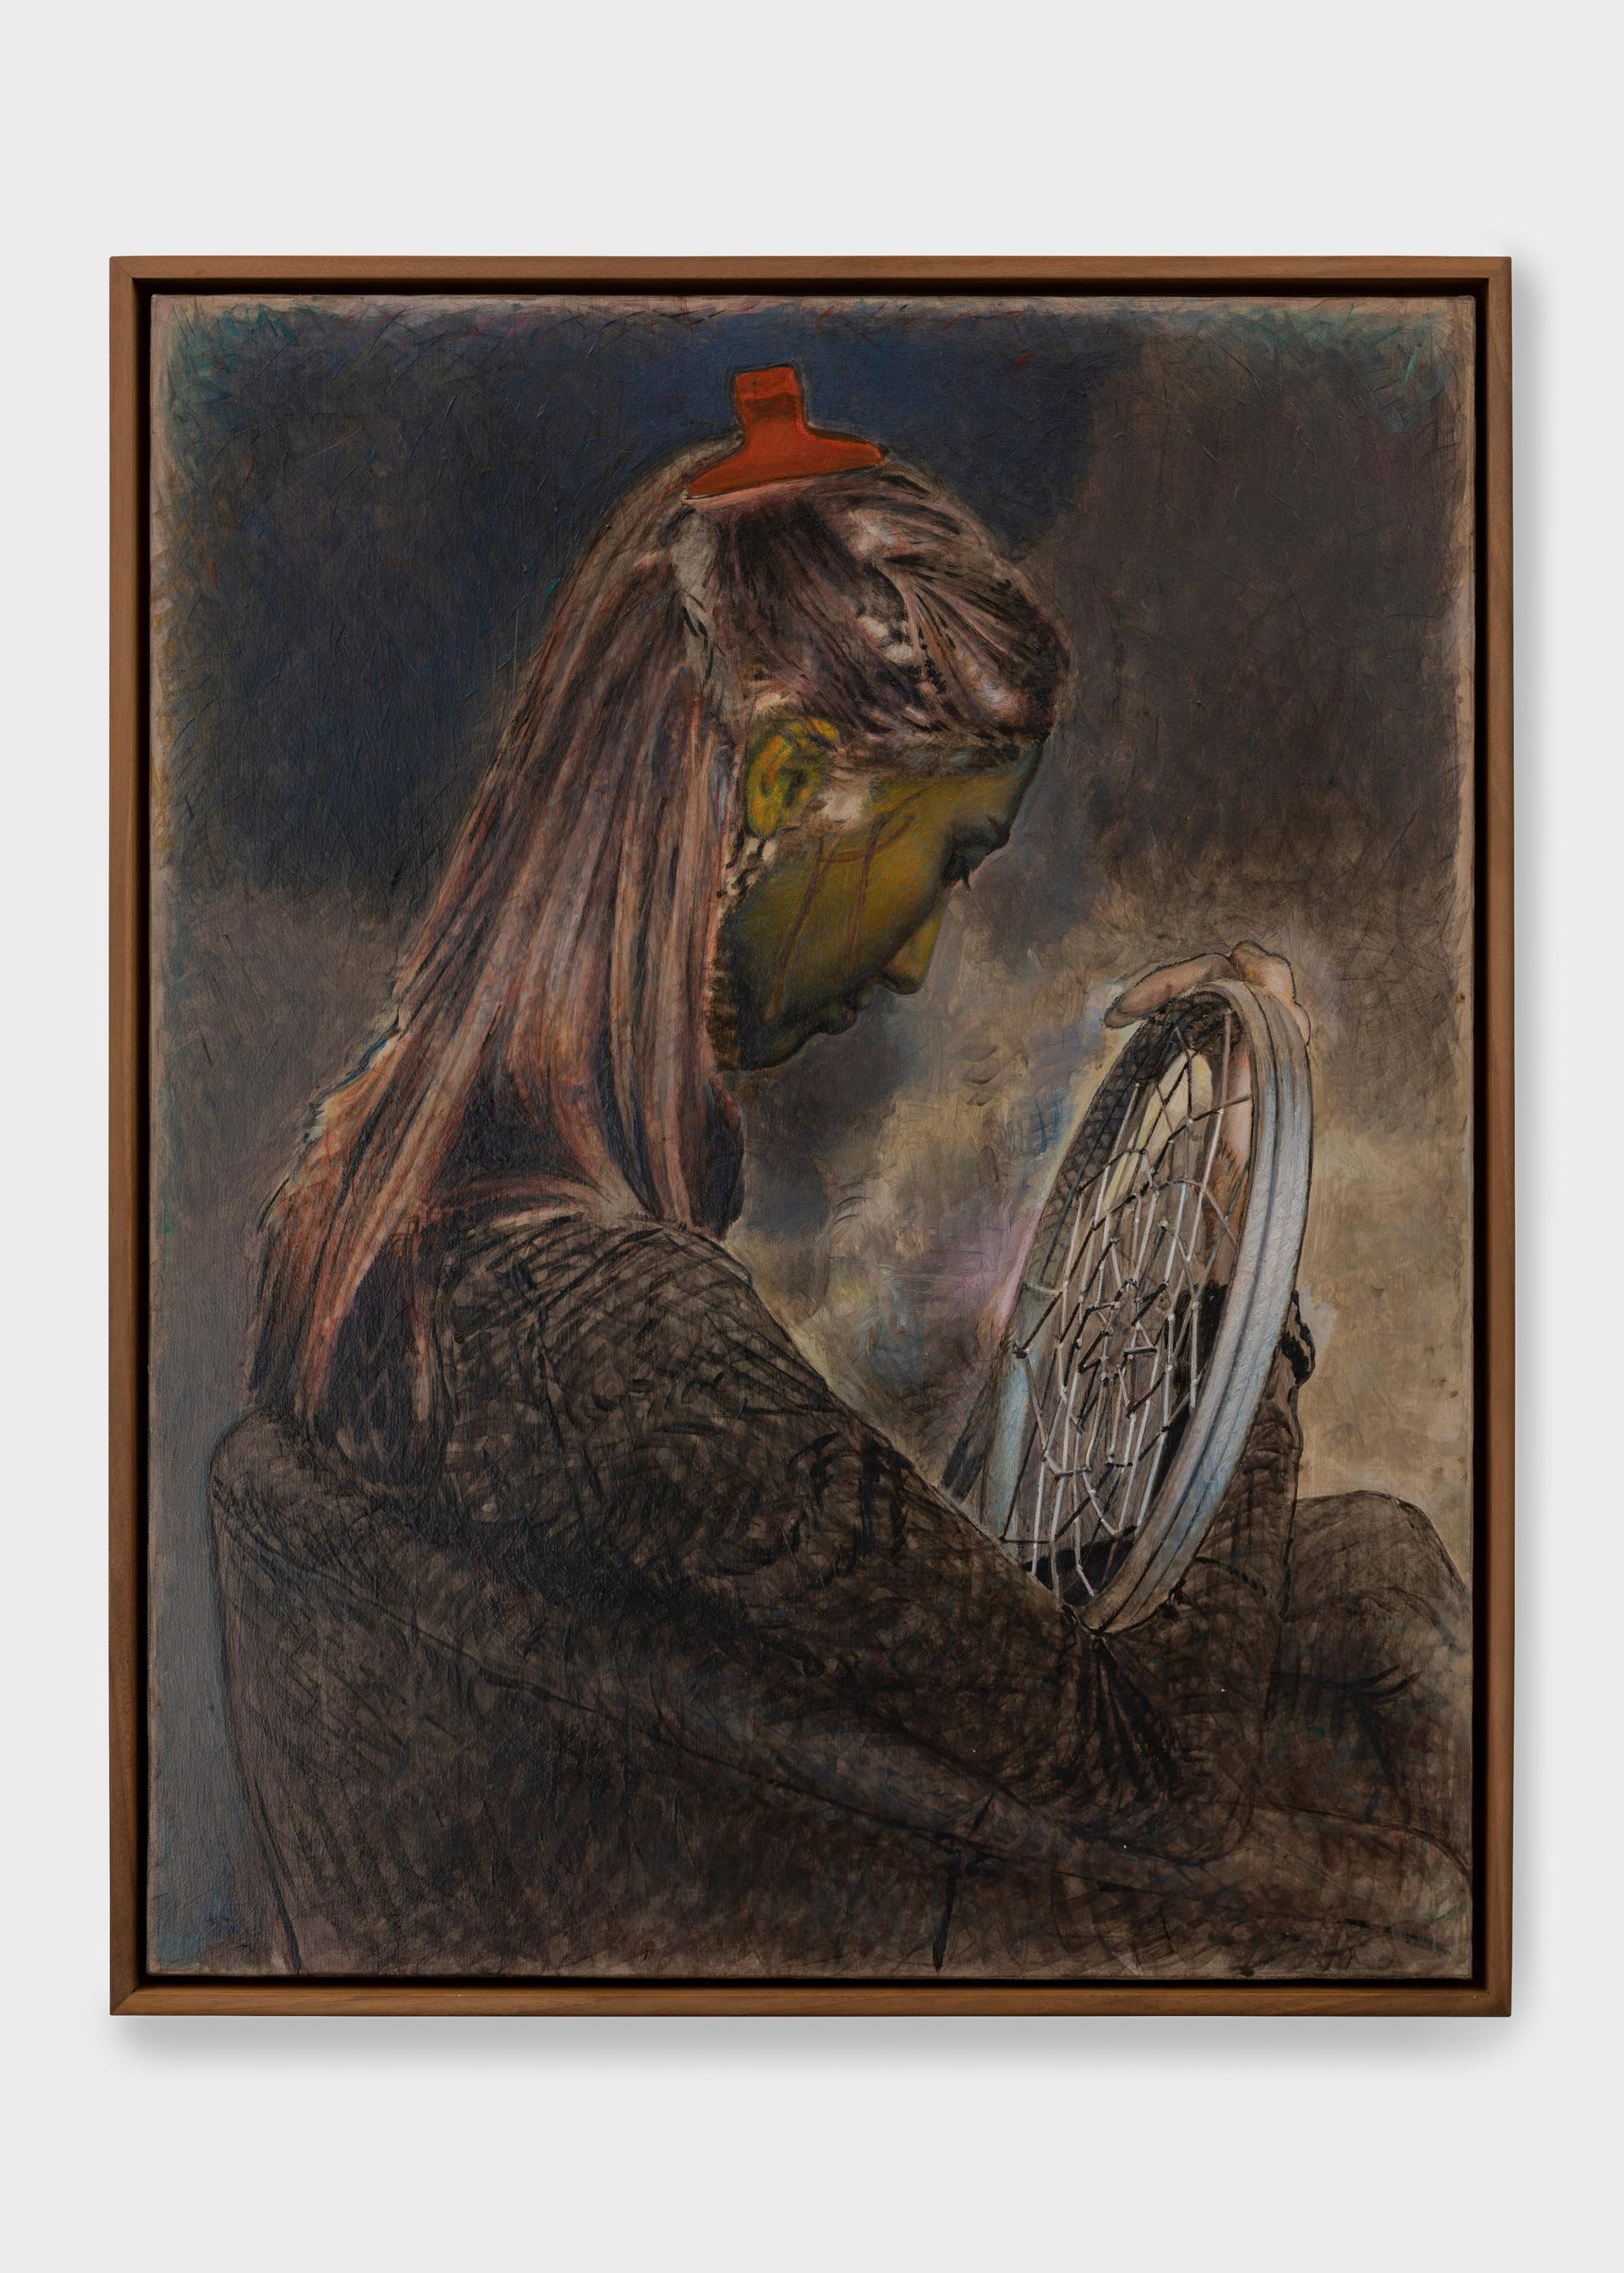 Pietro Roccasalva, La Sposa Occidentale, 2021, olio su tela, 72.7 x 57.3 cm. Collezione privata, Genova